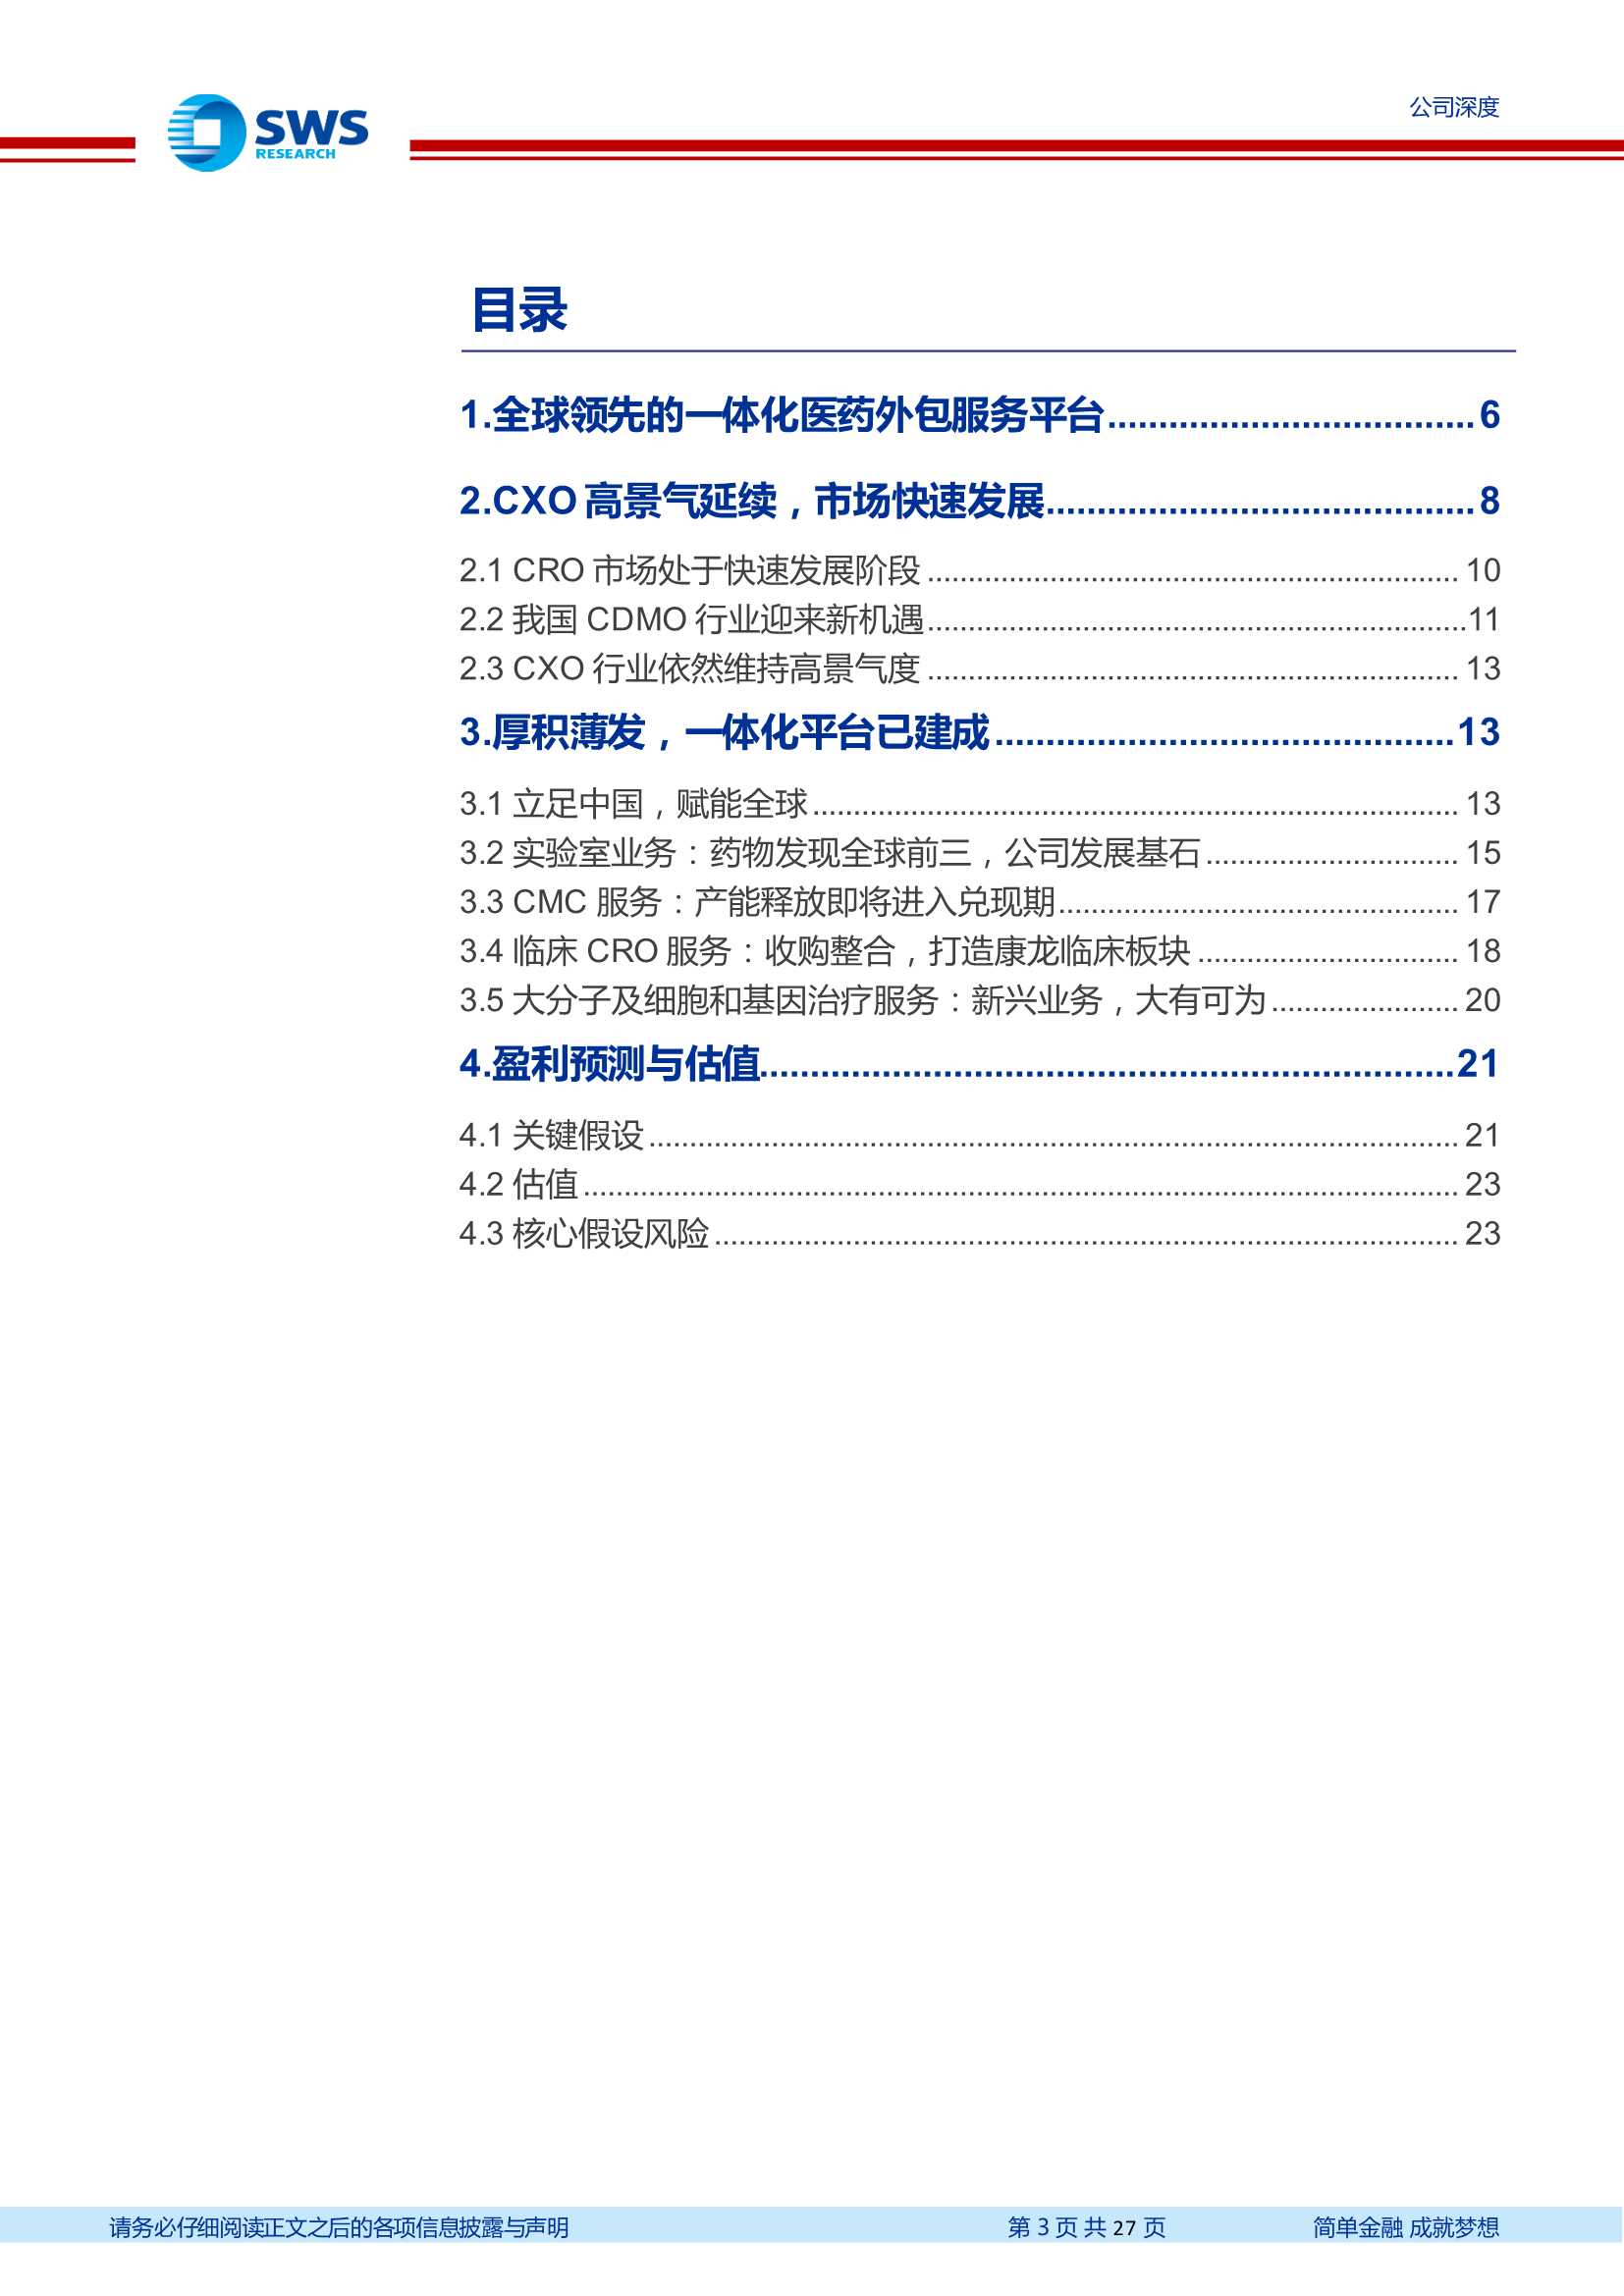 申万宏源-康龙化成-300759-四大业务快速发展，一体化CXO蓄势待发-20220222-27页